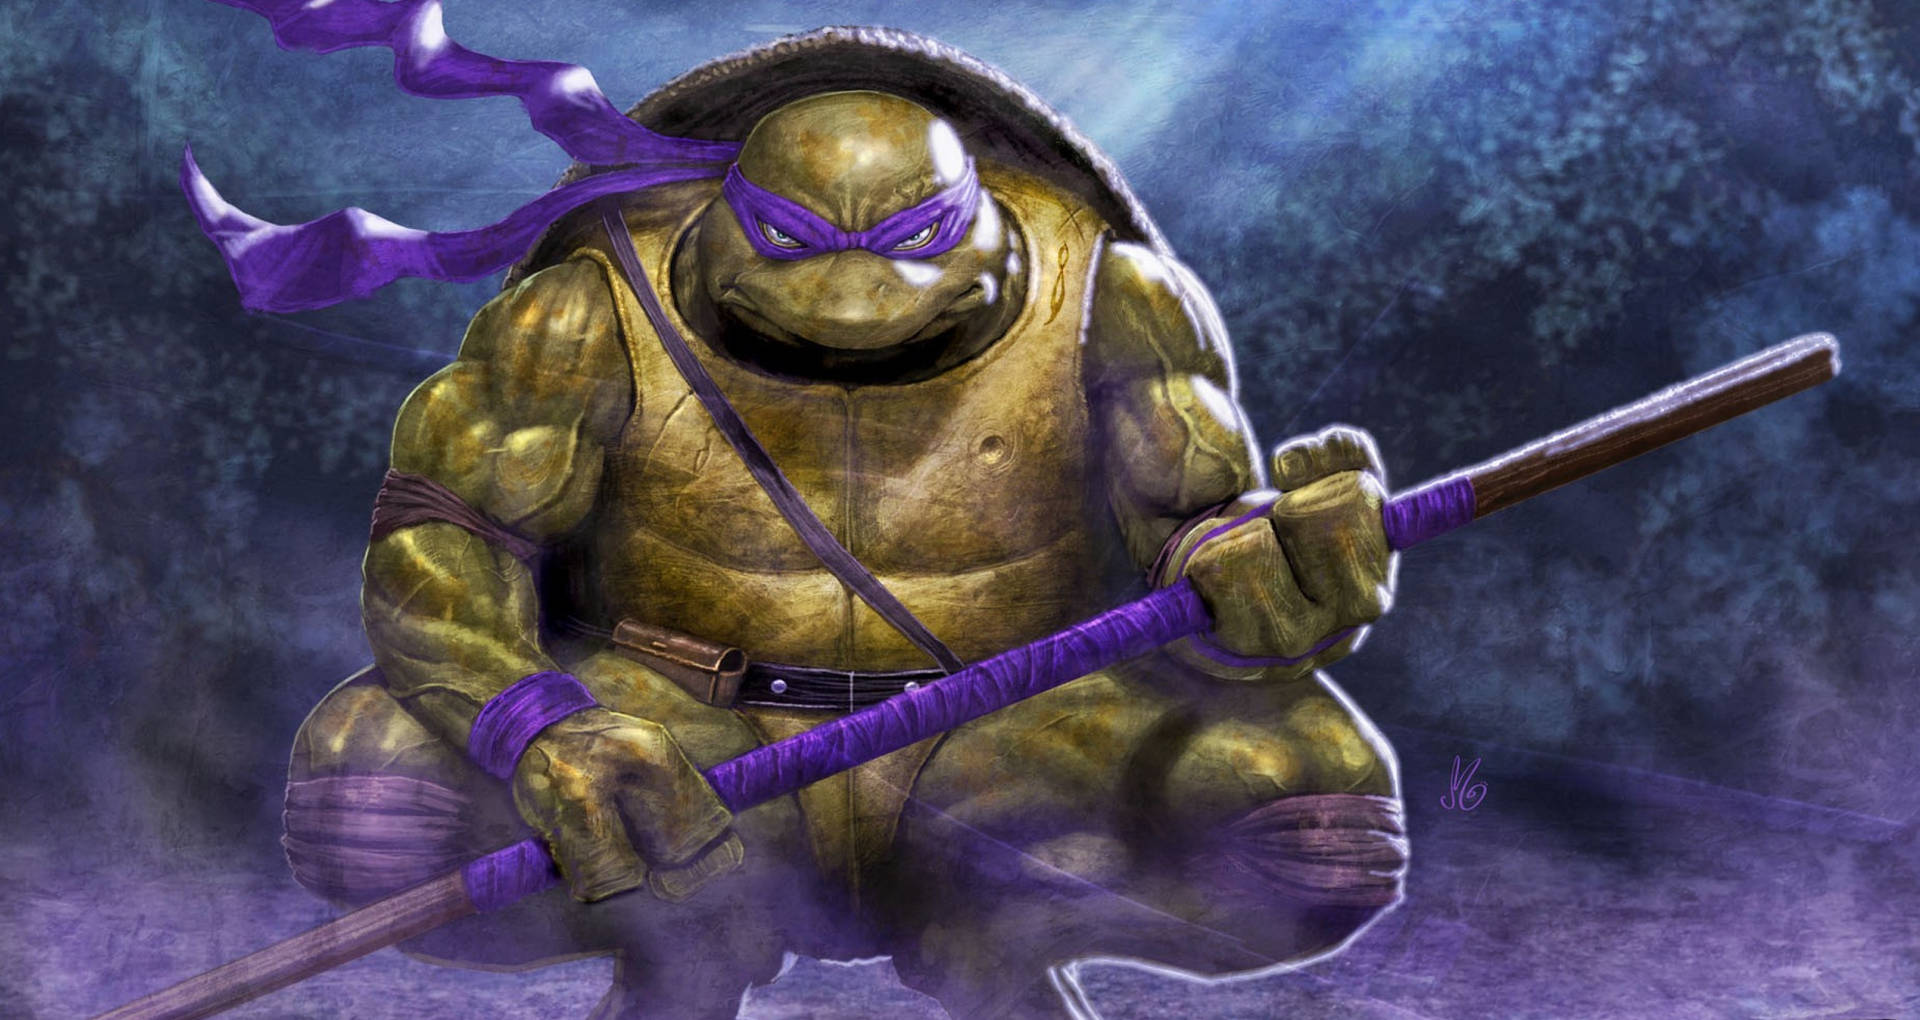 Ninja Turtle Donatello Fierce Wallpaper